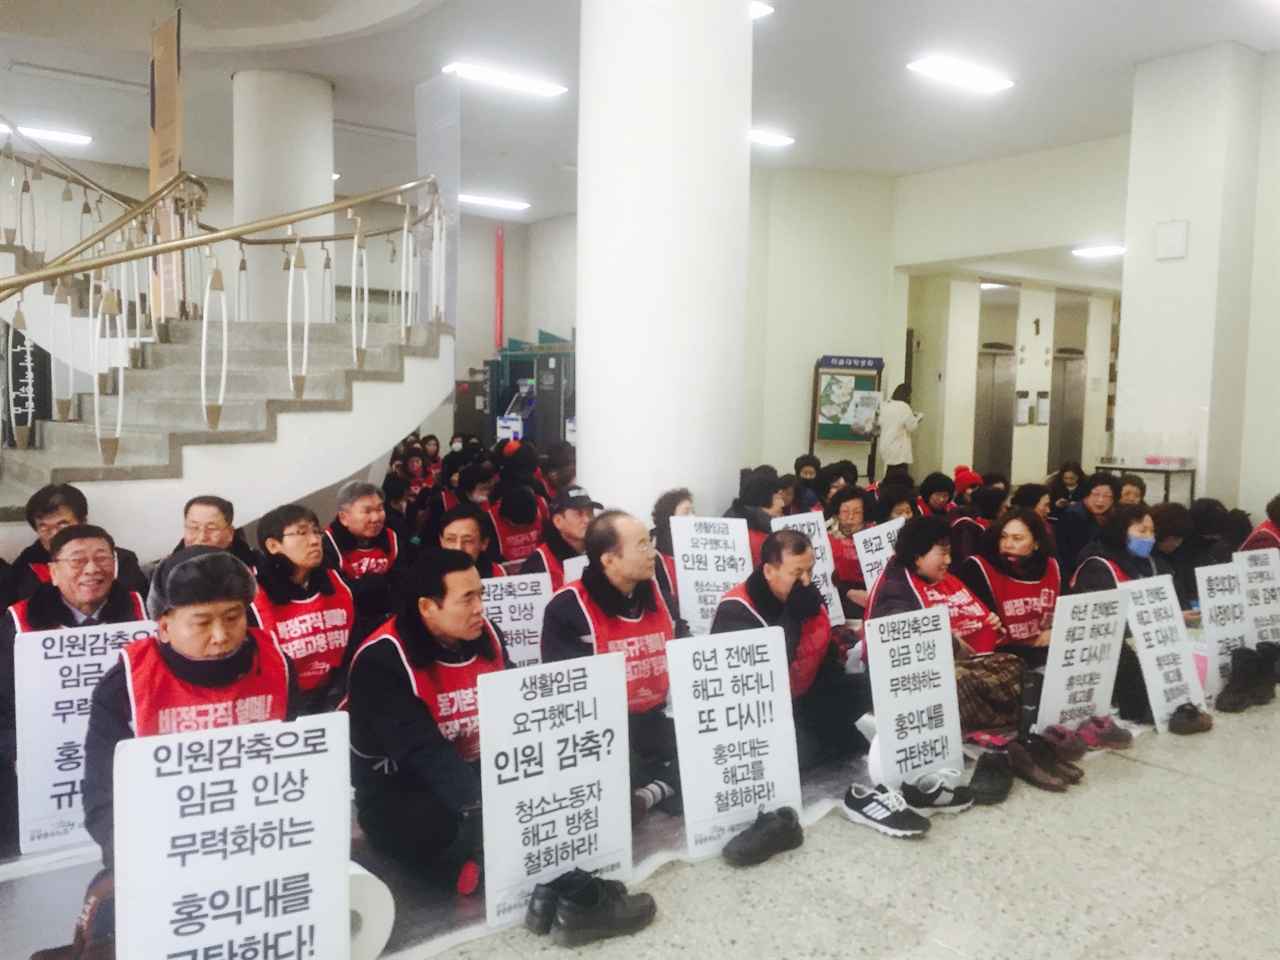 5일 오전에 열린 '홍대 청소노동자 해고 통지 철회 촉구' 집회